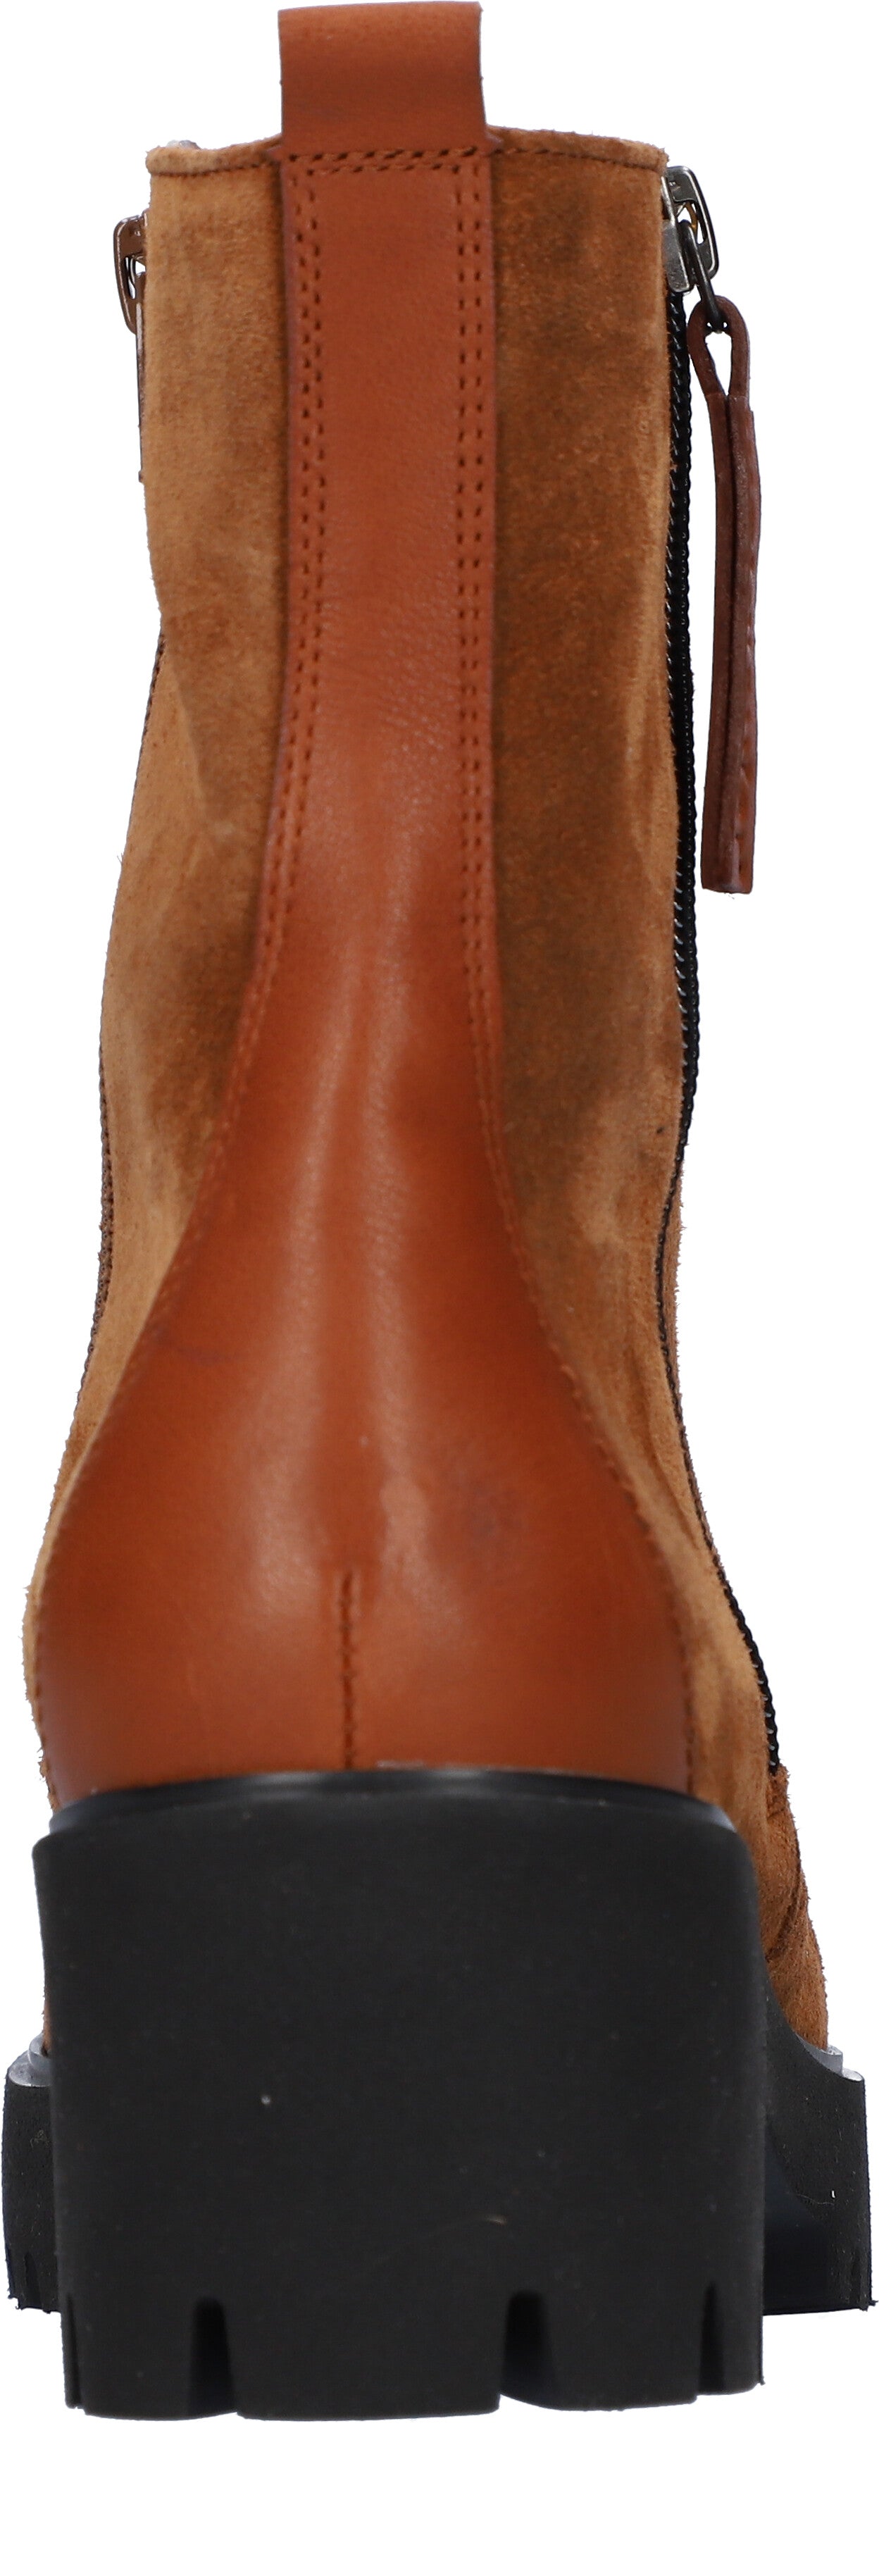 Waldlaufer 608803 200 082 K-Nira Ladies Brown Suede Side Zip Ankle Boots